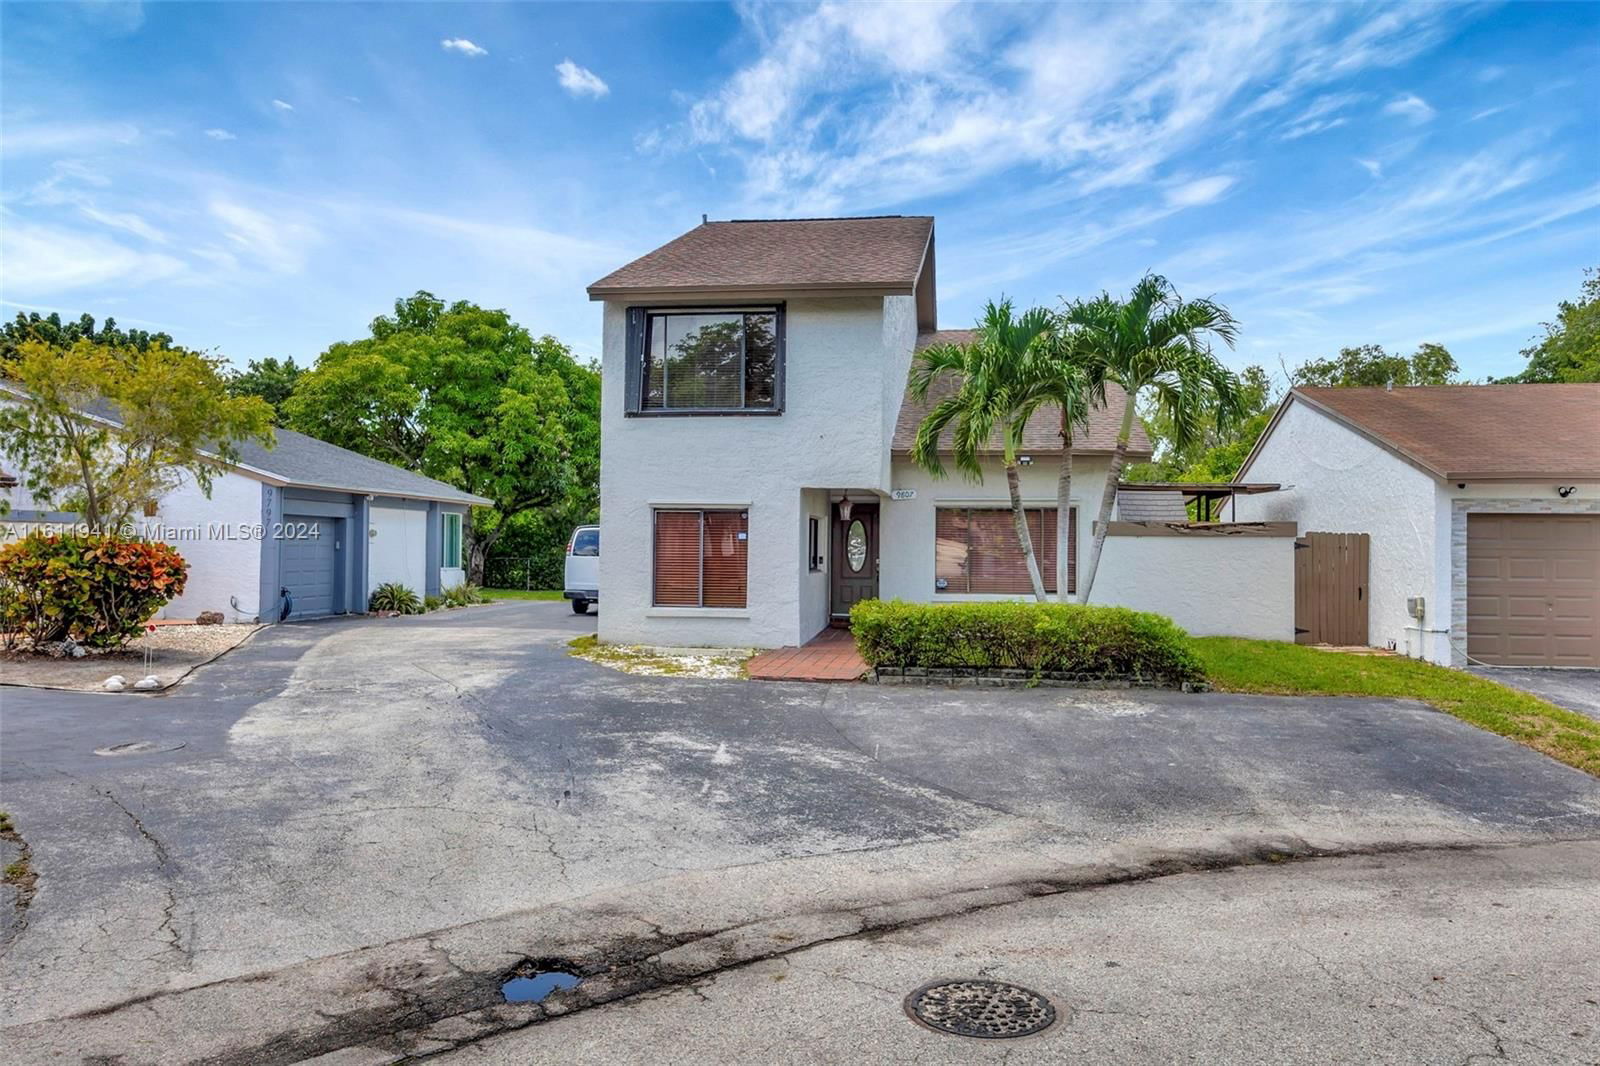 Real estate property located at 9807 147th Ct, Miami-Dade County, HAMMOCKS SEC 2, Miami, FL